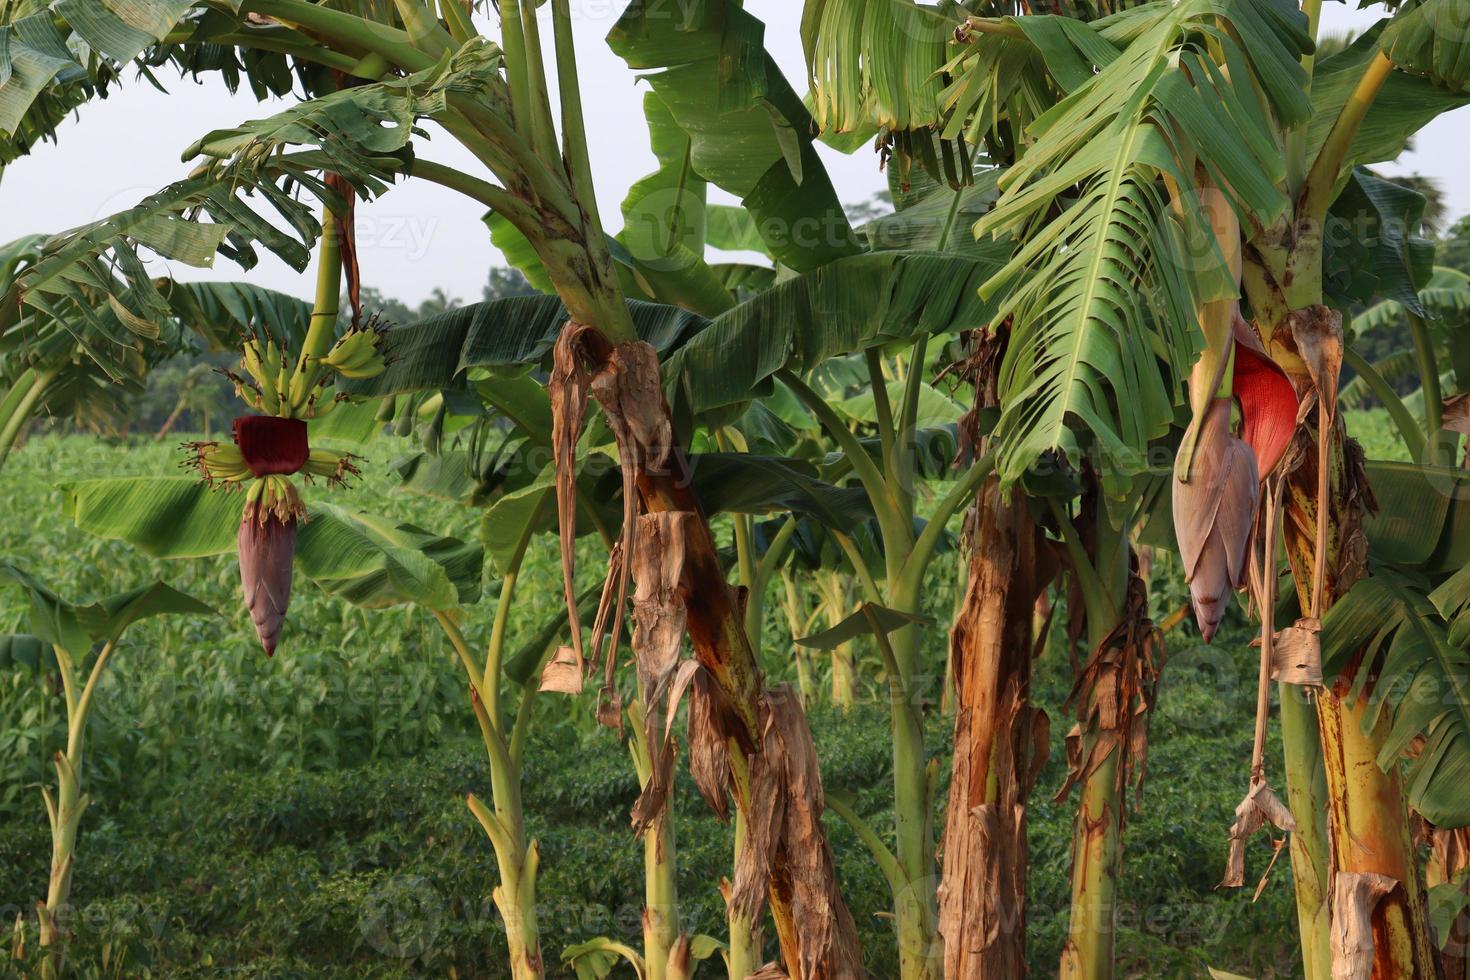 Bananenbaumbestand auf der Farm foto